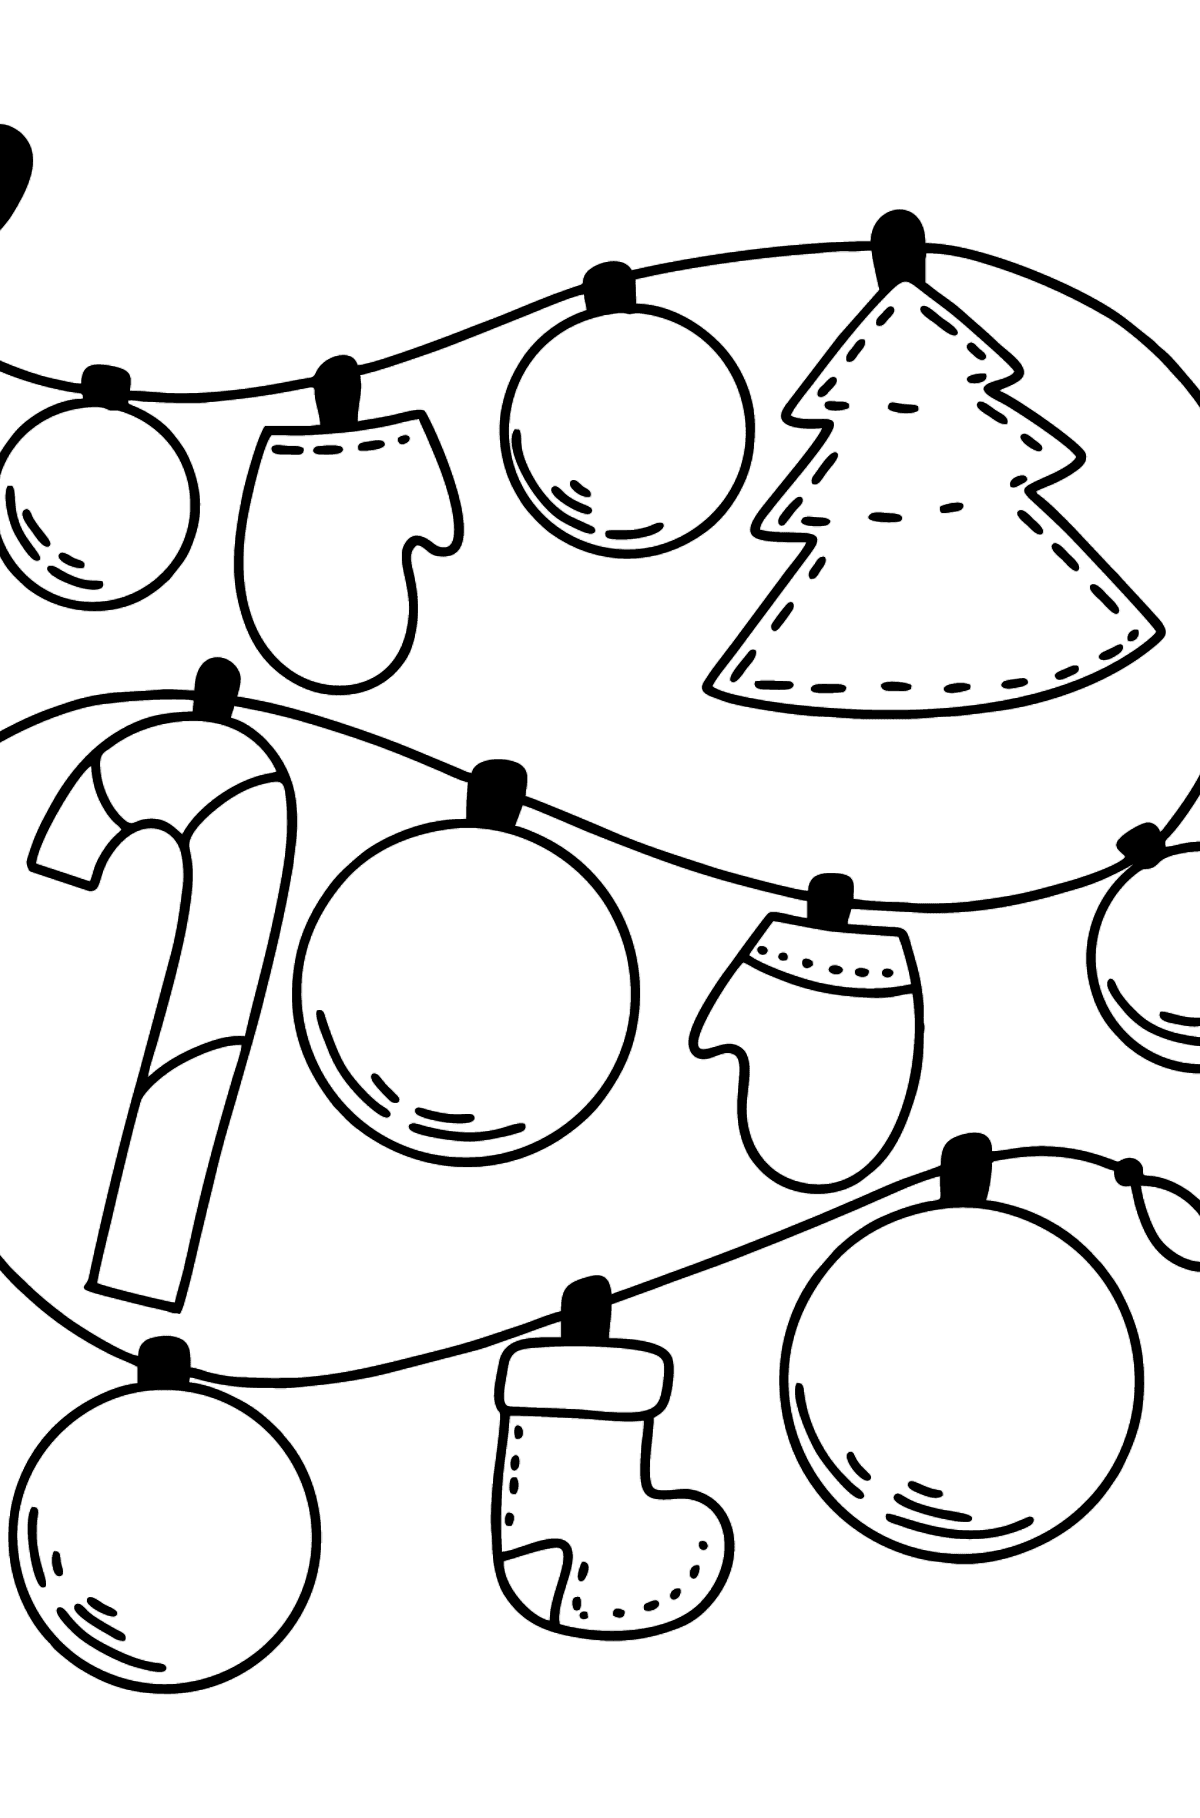 Раскраска рождественская гирлянда - Картинки для Детей